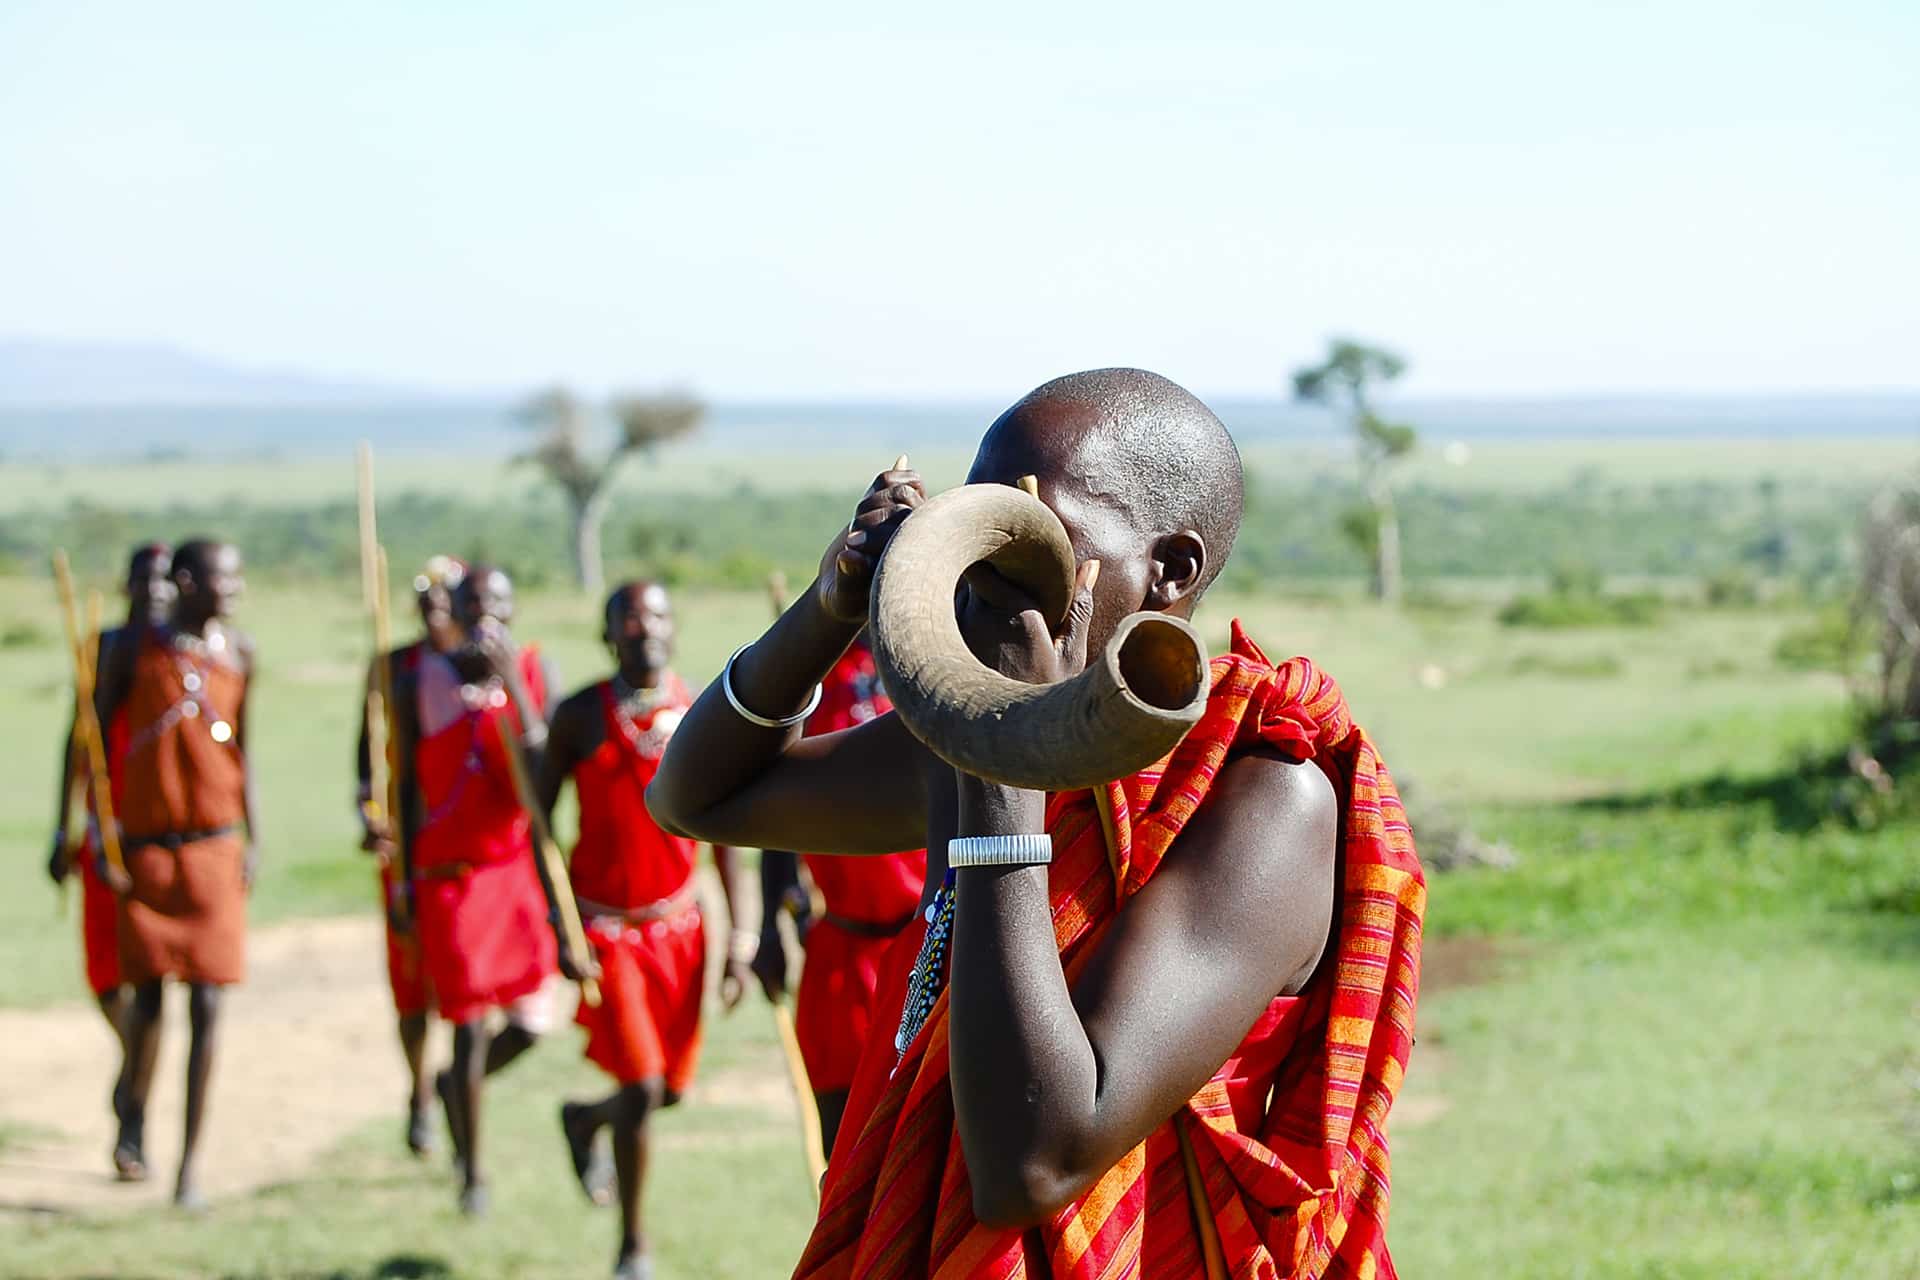 A Maasai warrior of East Africa blowing a Kudu horn